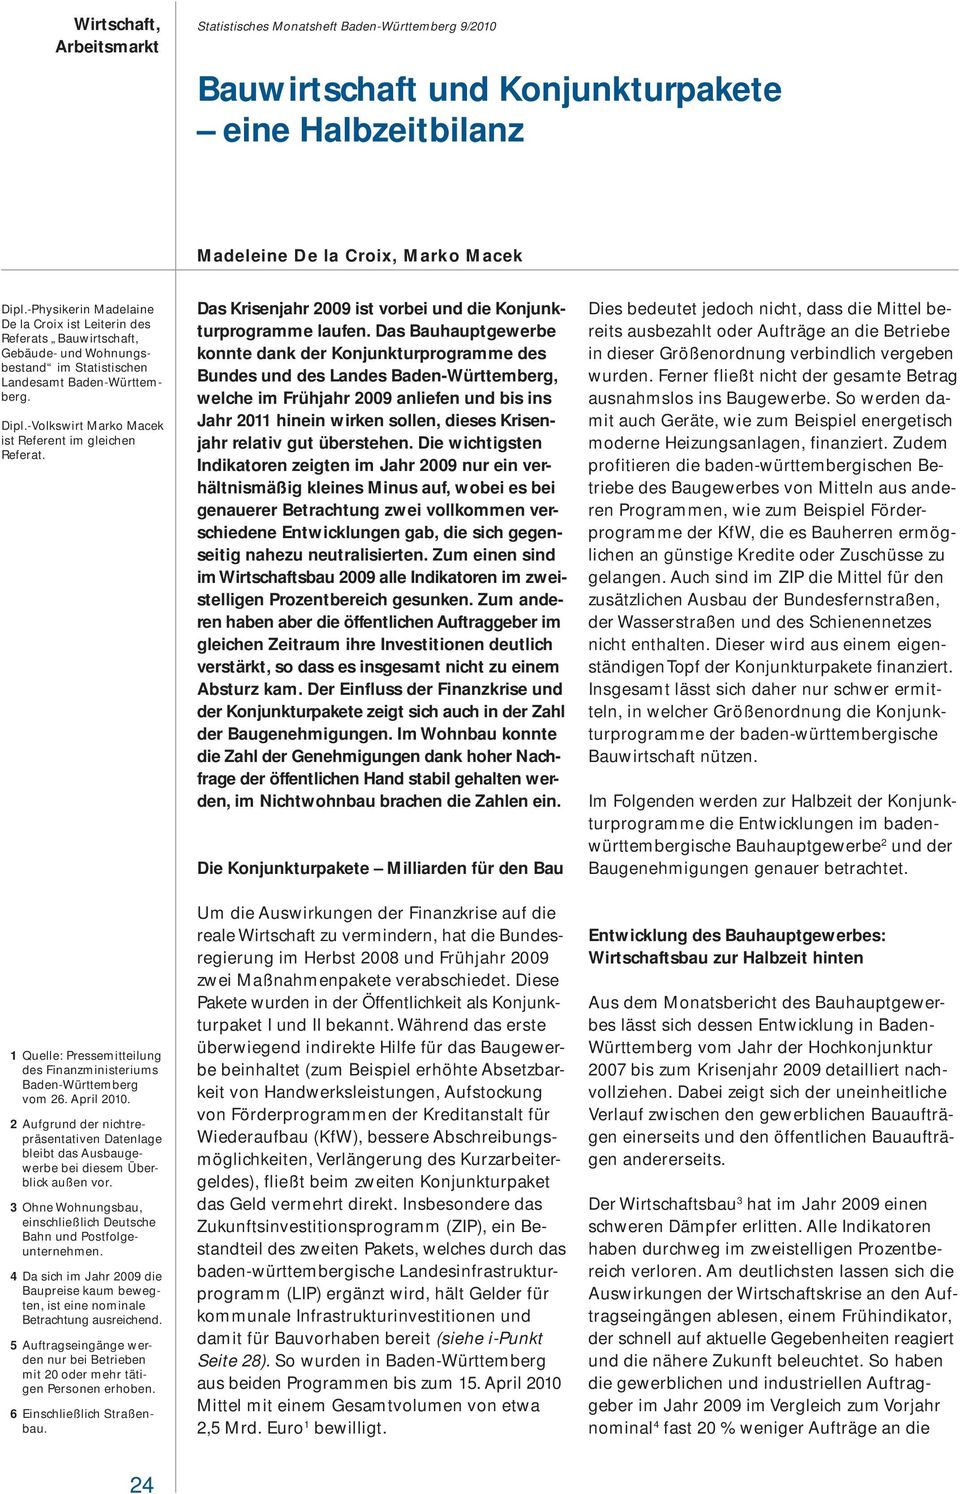 -Volkswirt Marko Macek ist Referent im gleichen Referat. 1 Quelle: Pressemitteilung des Finanzministeriums Baden-Württemberg vom 26. April 21.